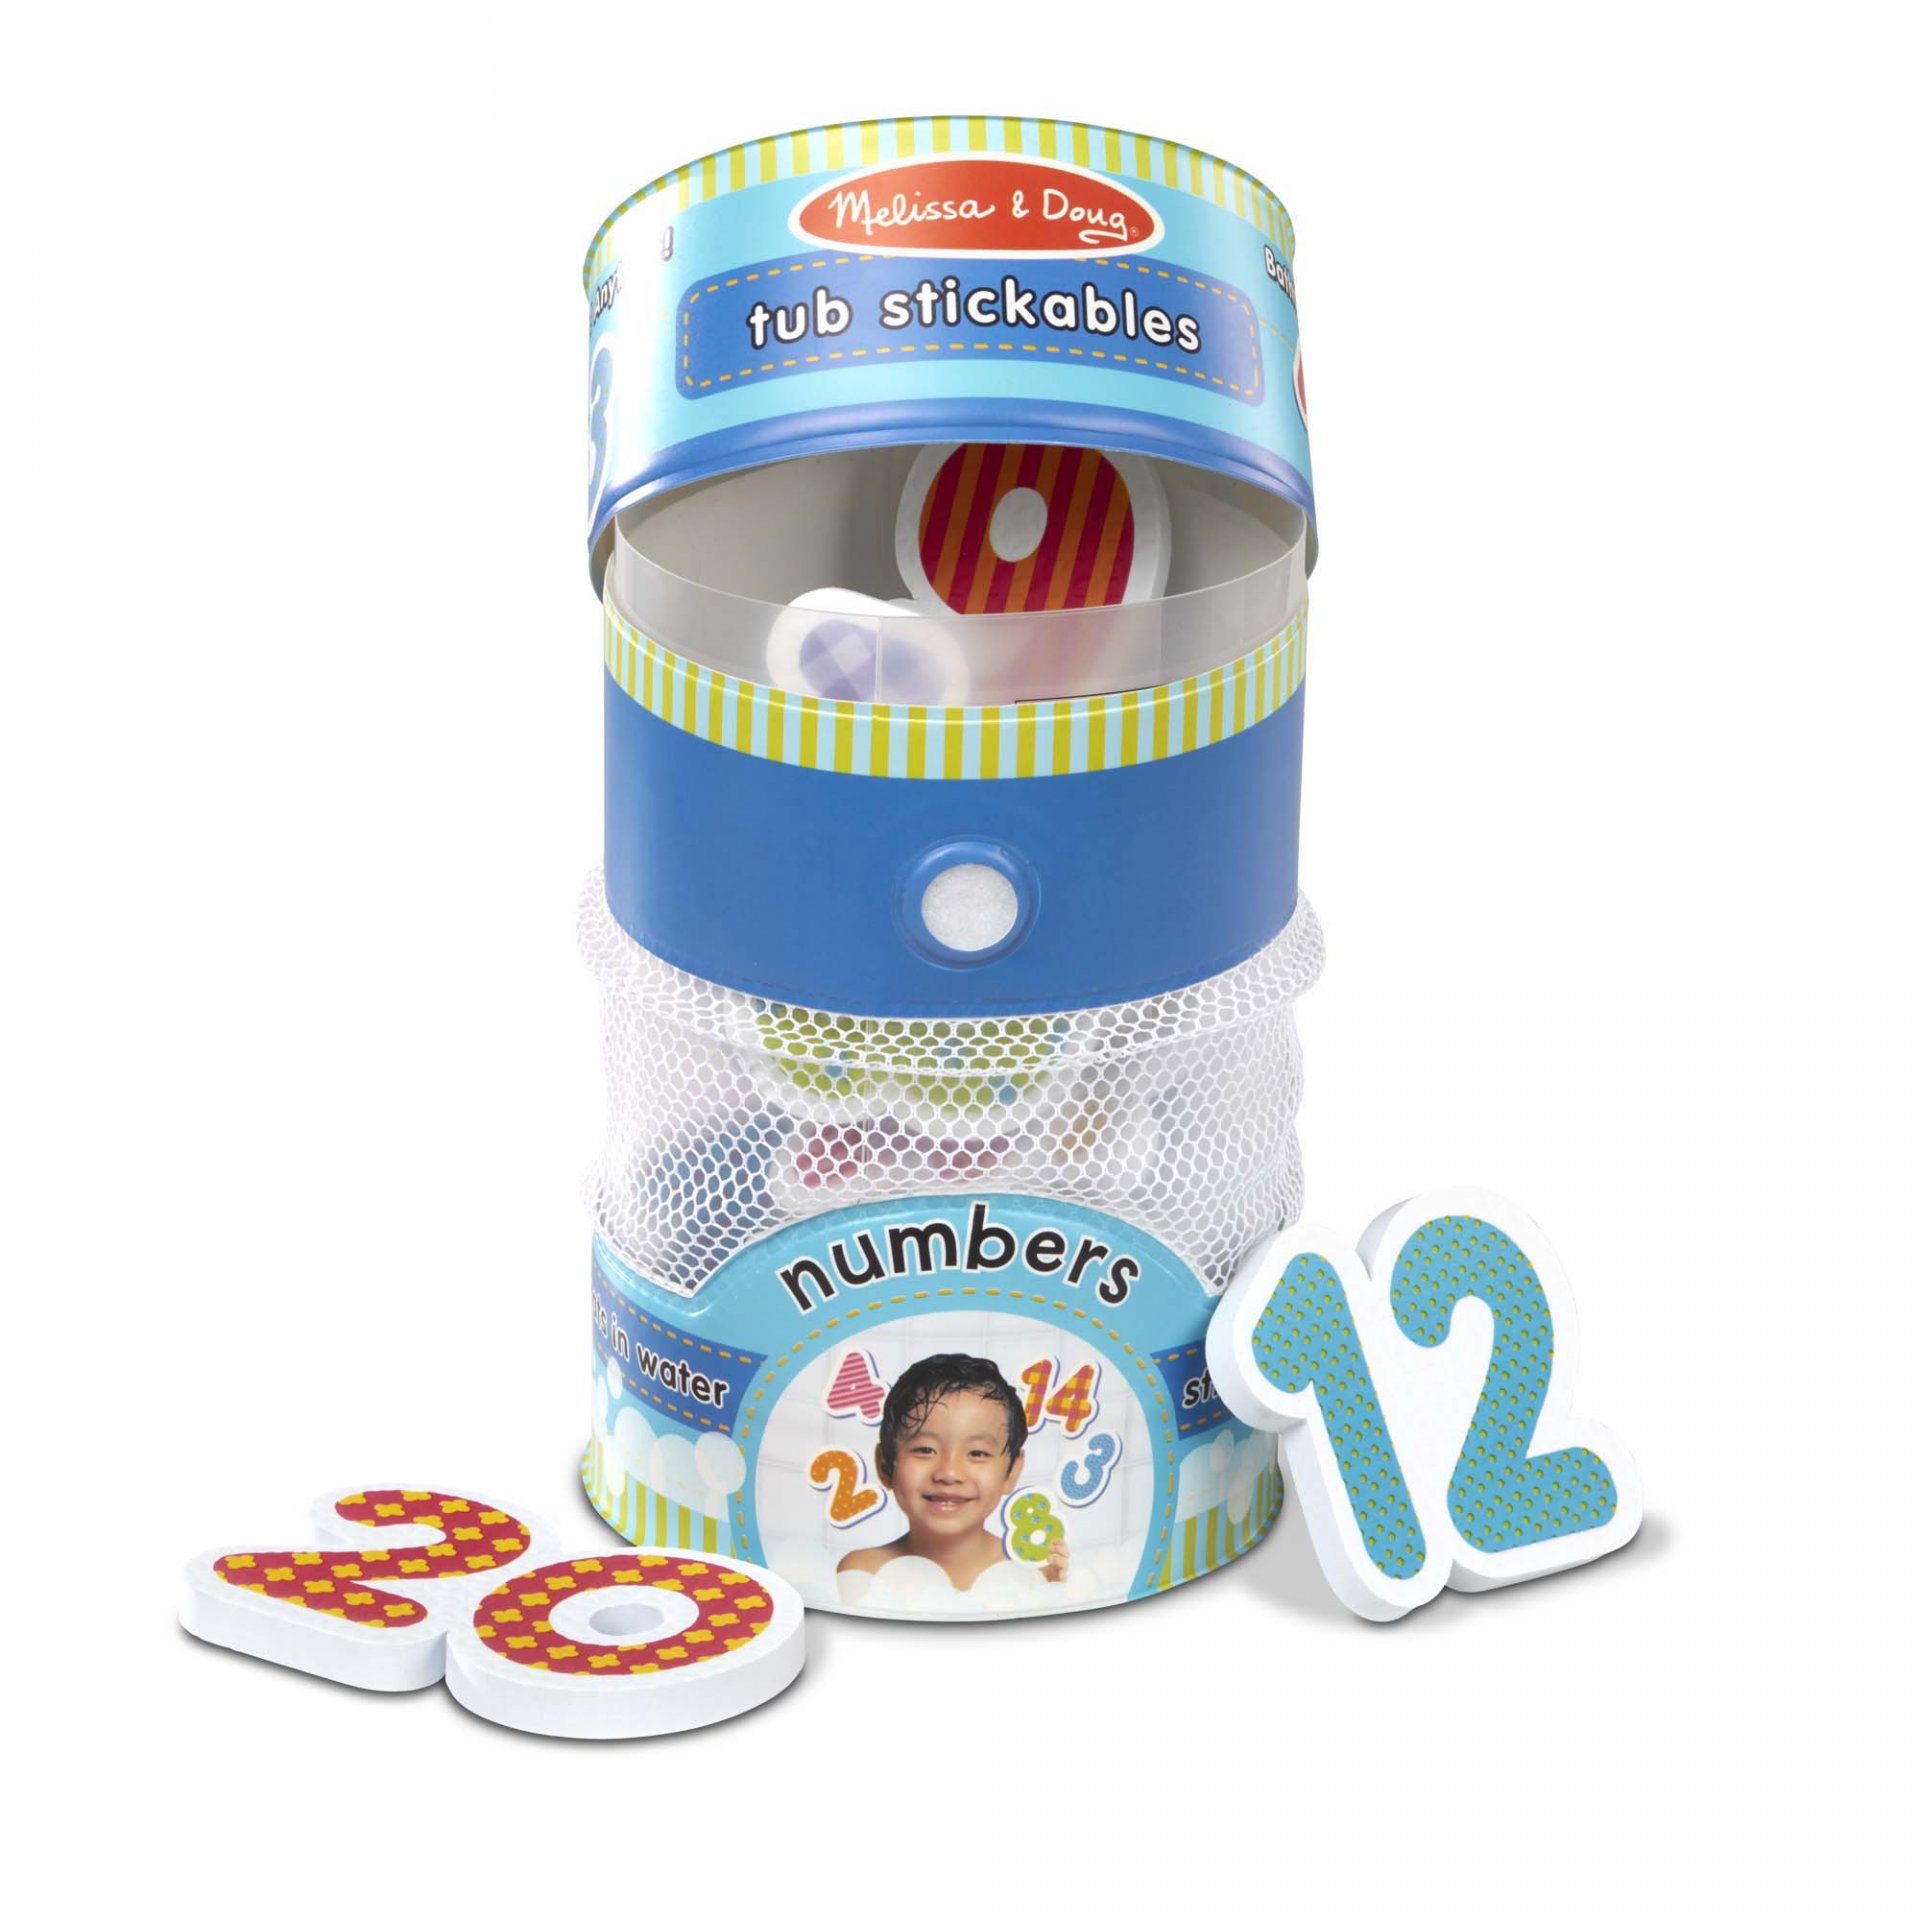 ชุดตัวติดผนังลอยน้ำได้ รุ่นตัวเลข Tub Stickables - Numbers Soft Shapes Bath Toy รุ่น 31403 ยี่ห้อ Melissa & Doug (นำเข้า USA)